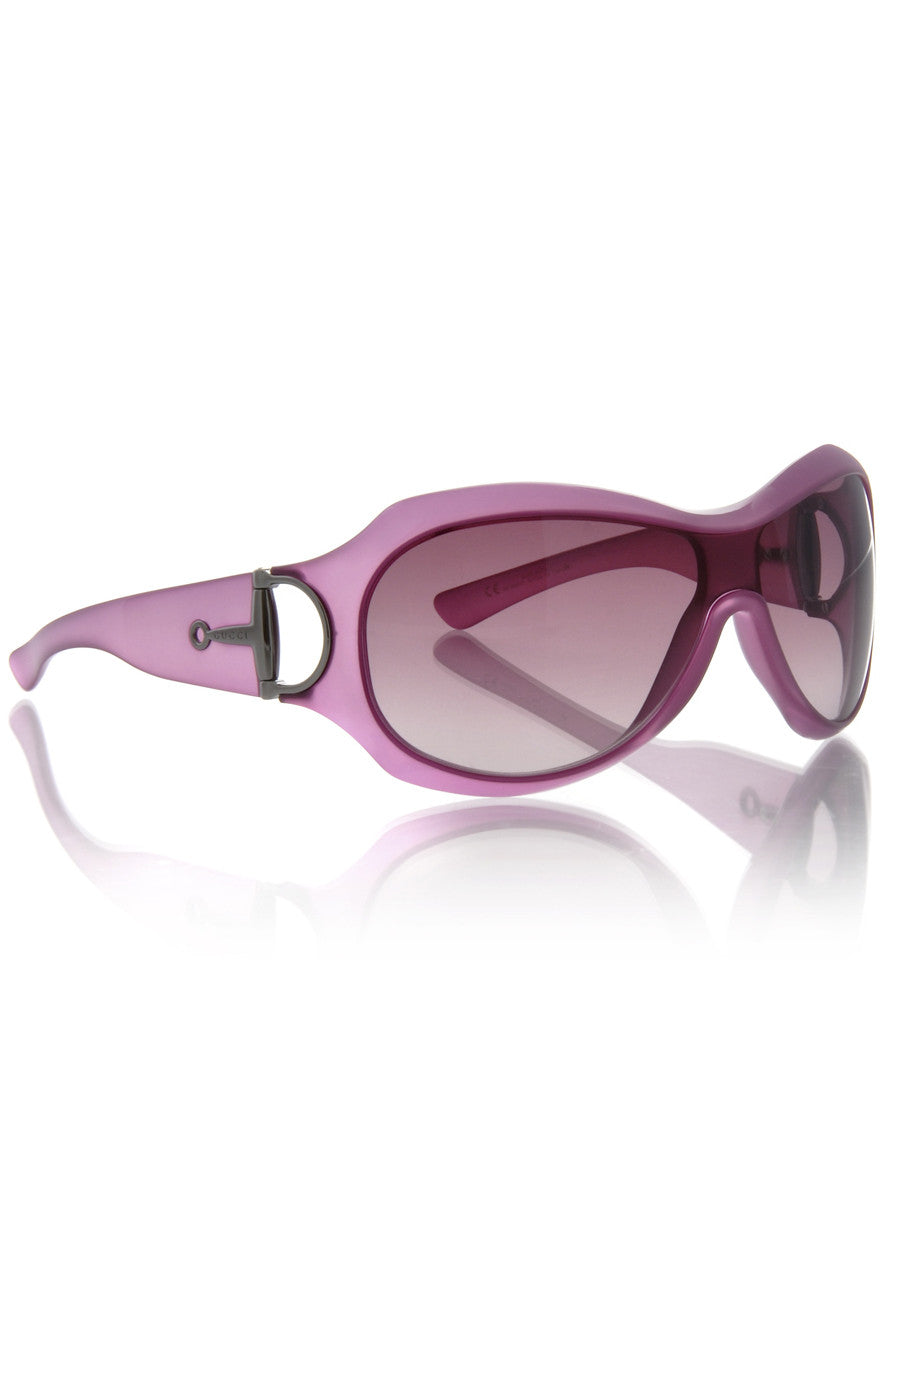 Μοβ Γυαλιά Ηλίου - Gucci 2900 | Γυναικεία Γυαλιά Ηλίου